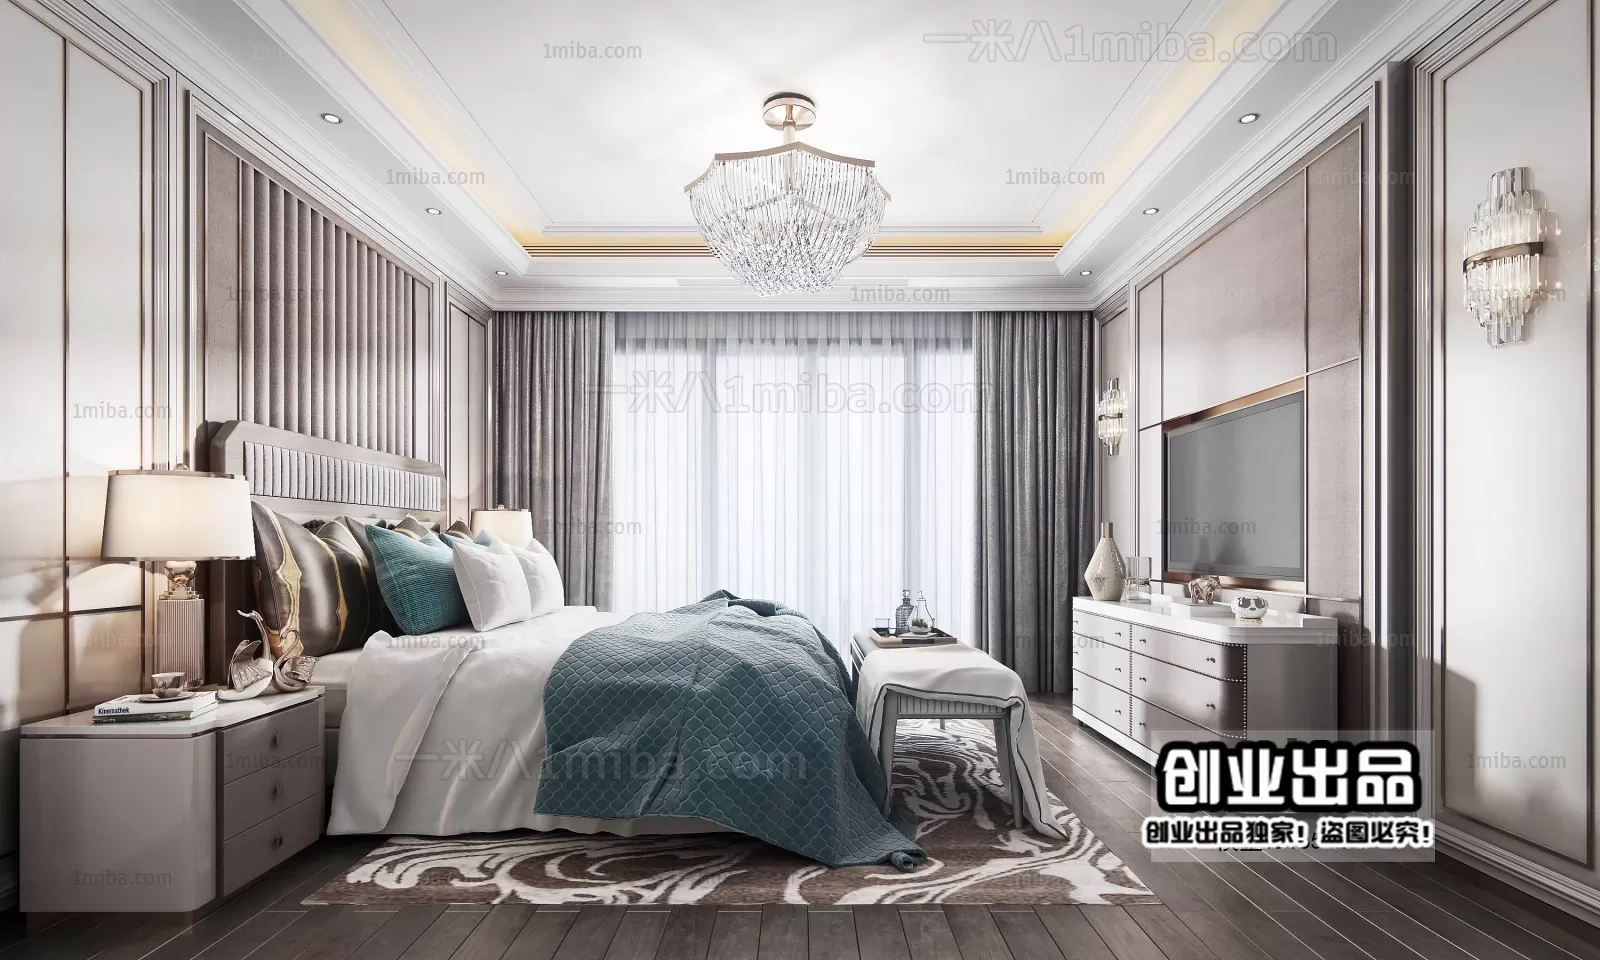 Bedroom – Modern Interior Design – 3D Models – 144